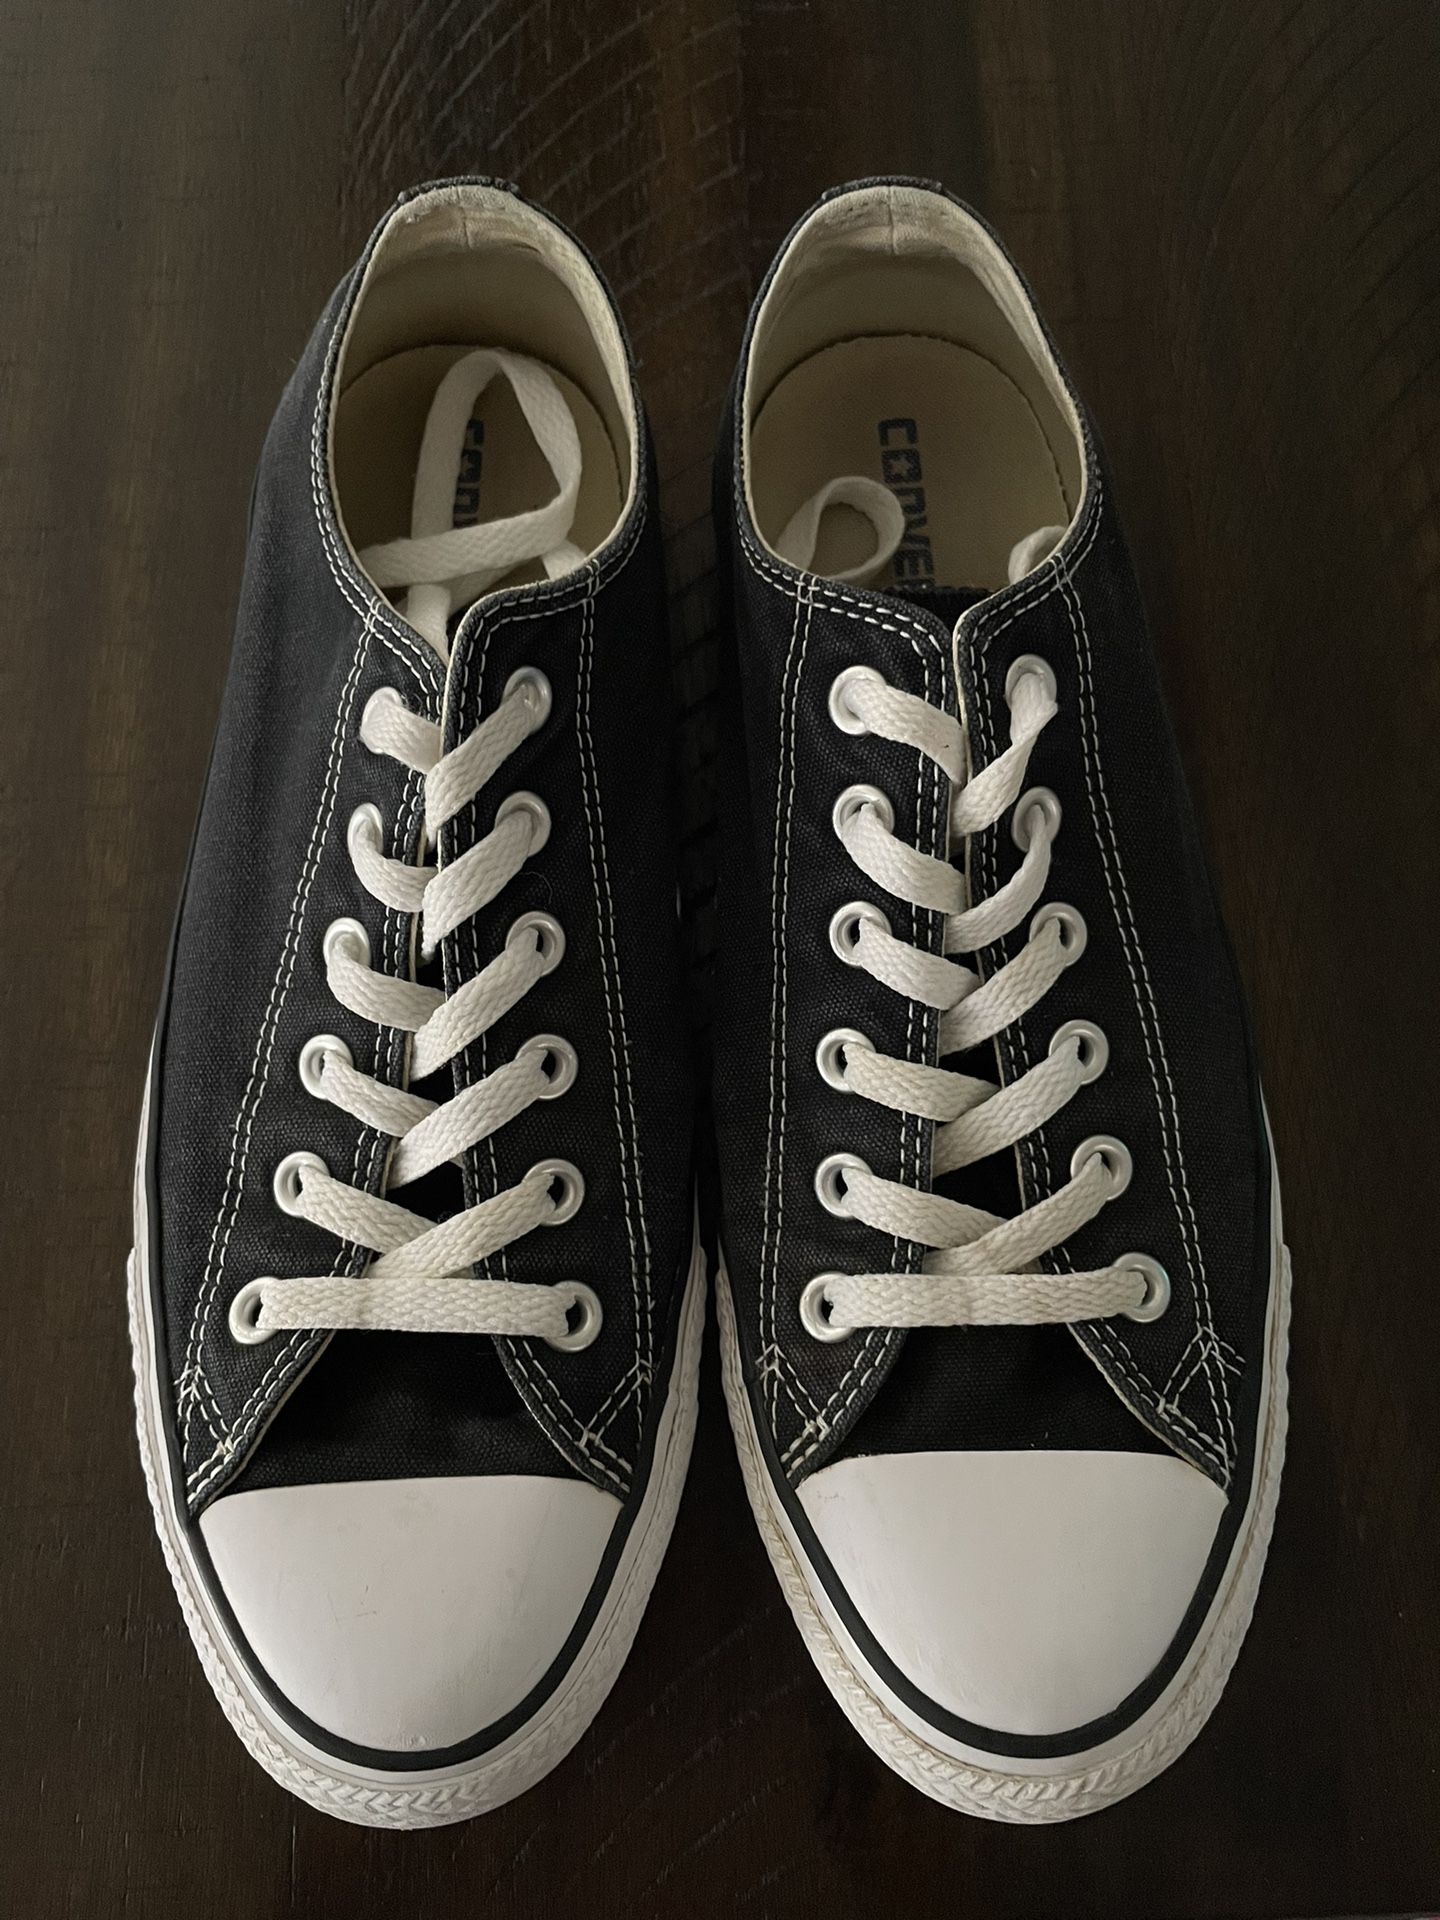 Converse Chuck Taylor Shoes Men’s Size 8